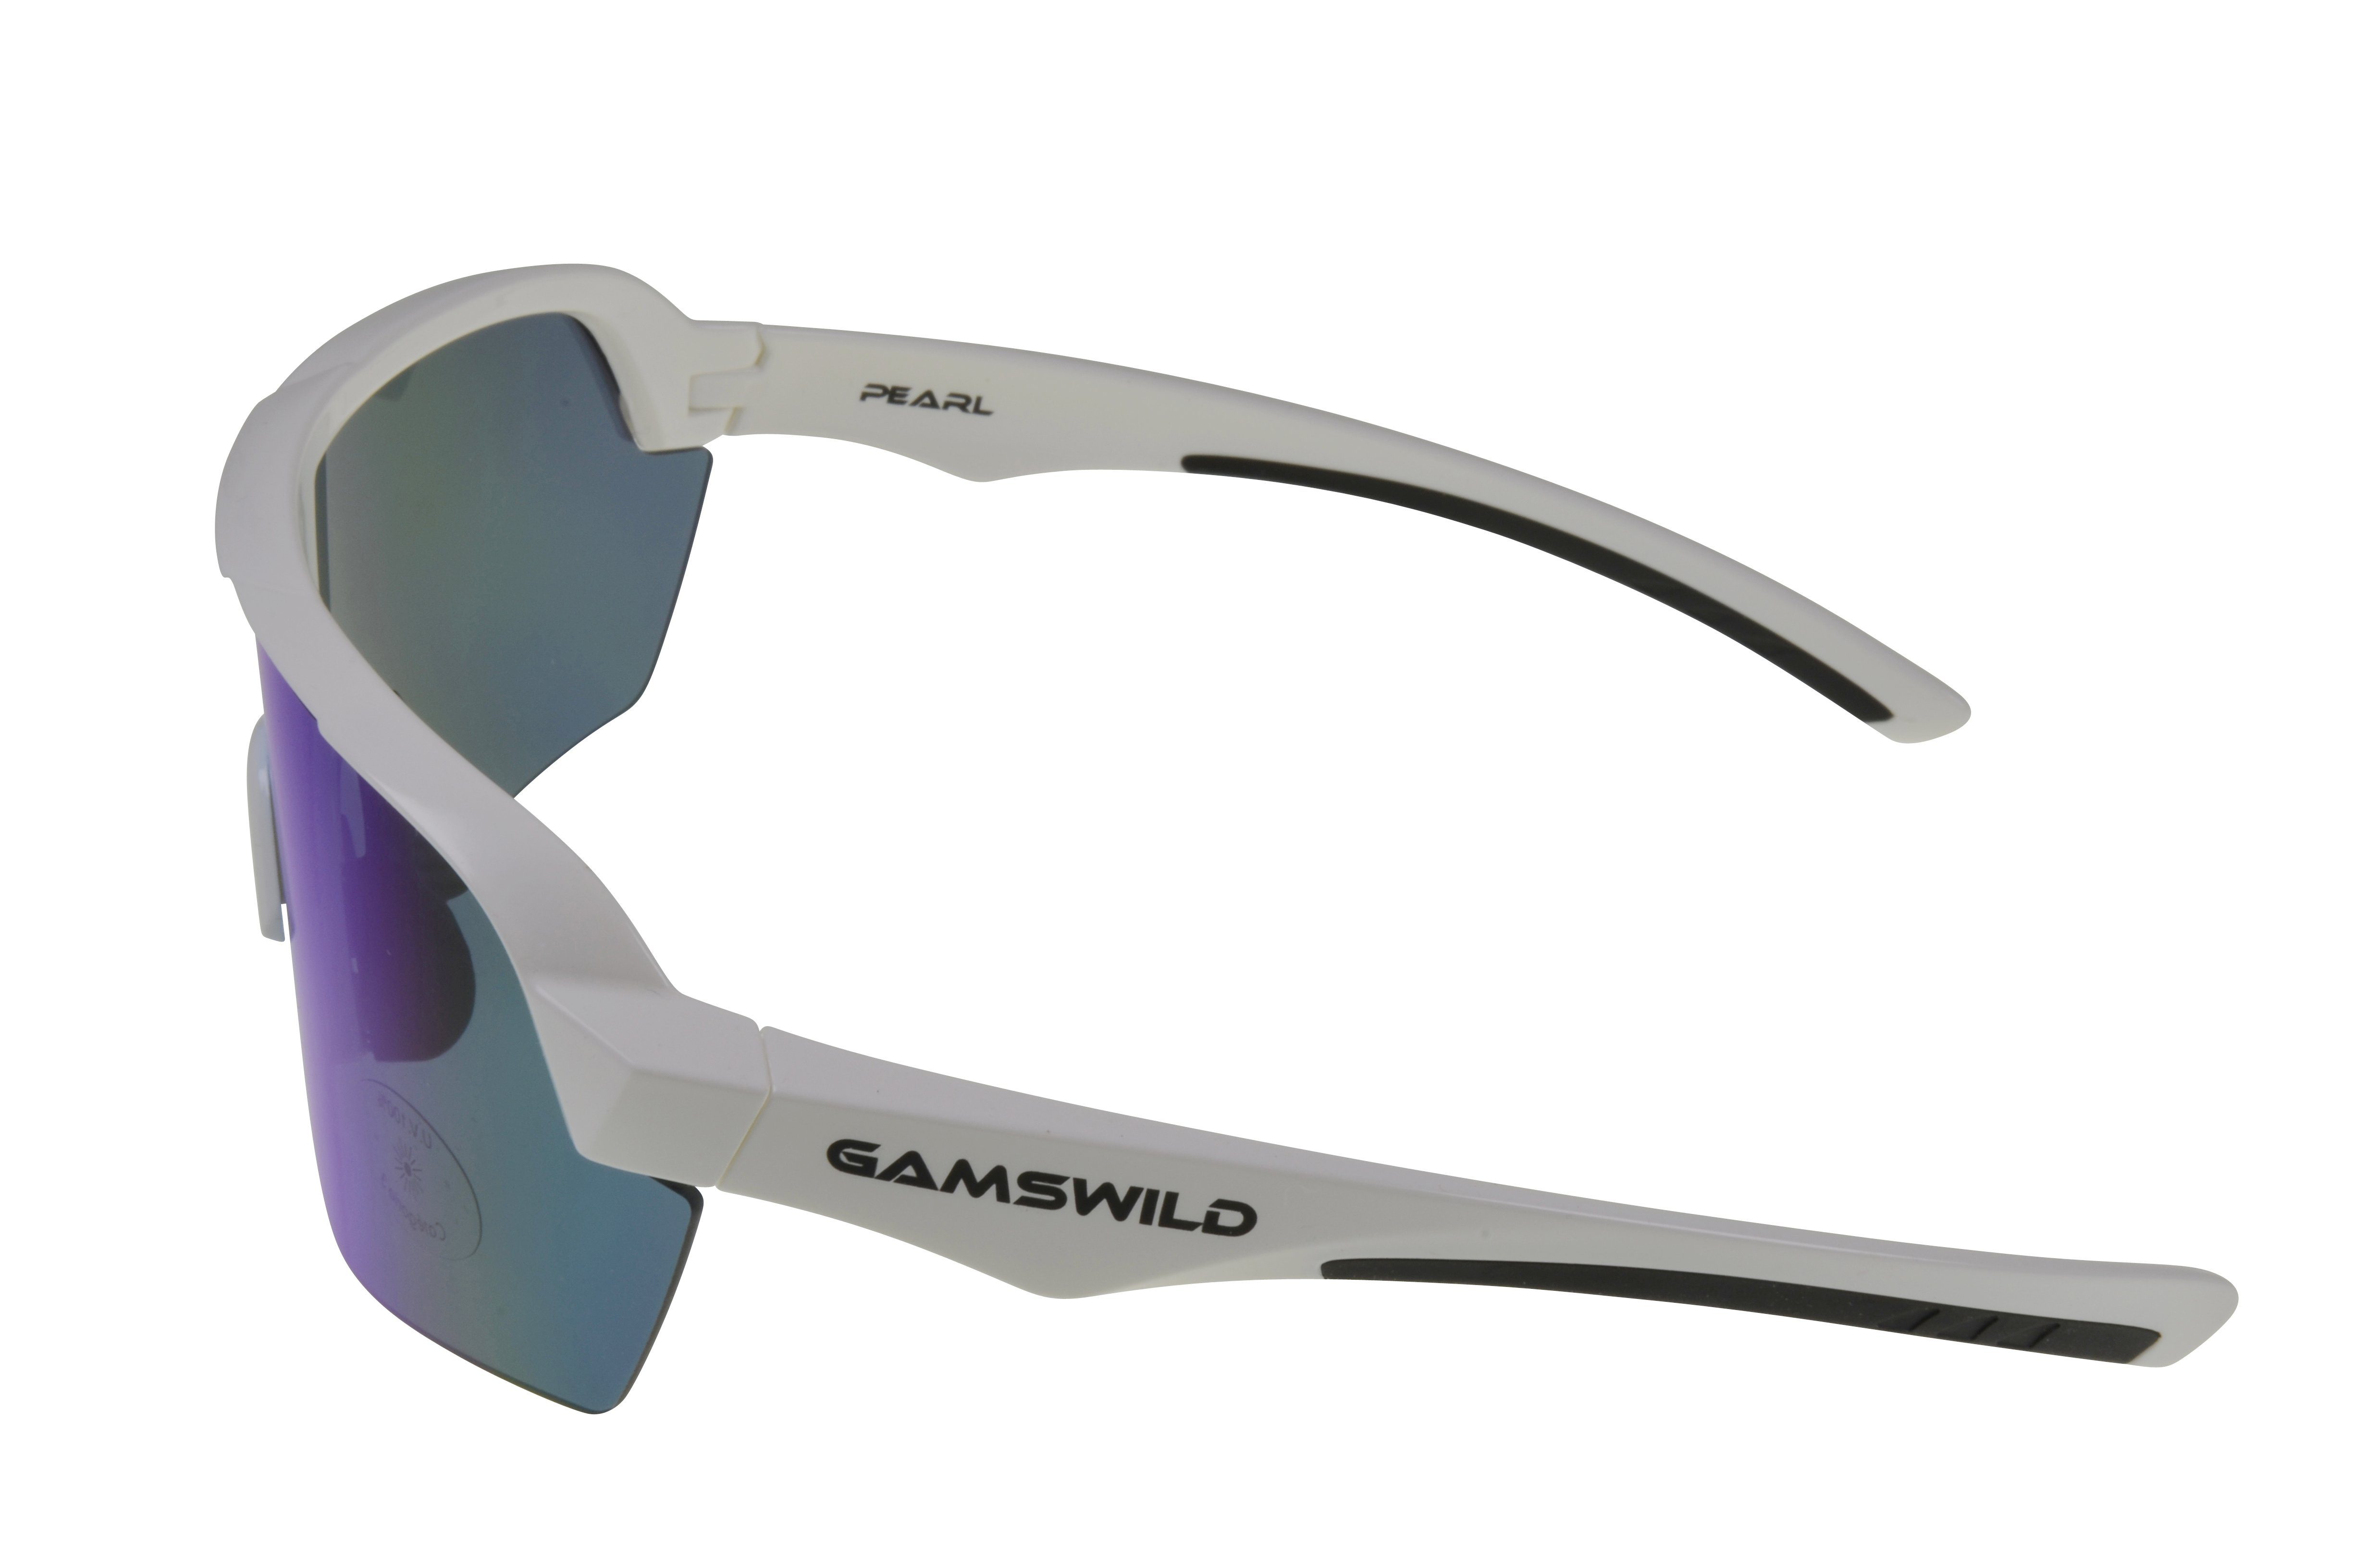 Damen Gamswild extra blau, Unisex, weiß_blau cat.3 pink, Fahrradbrille schwarz, Skibrille mintgrün WS7138 große Sonnenbrille Scheibe, Sportbrille Herren weiß,